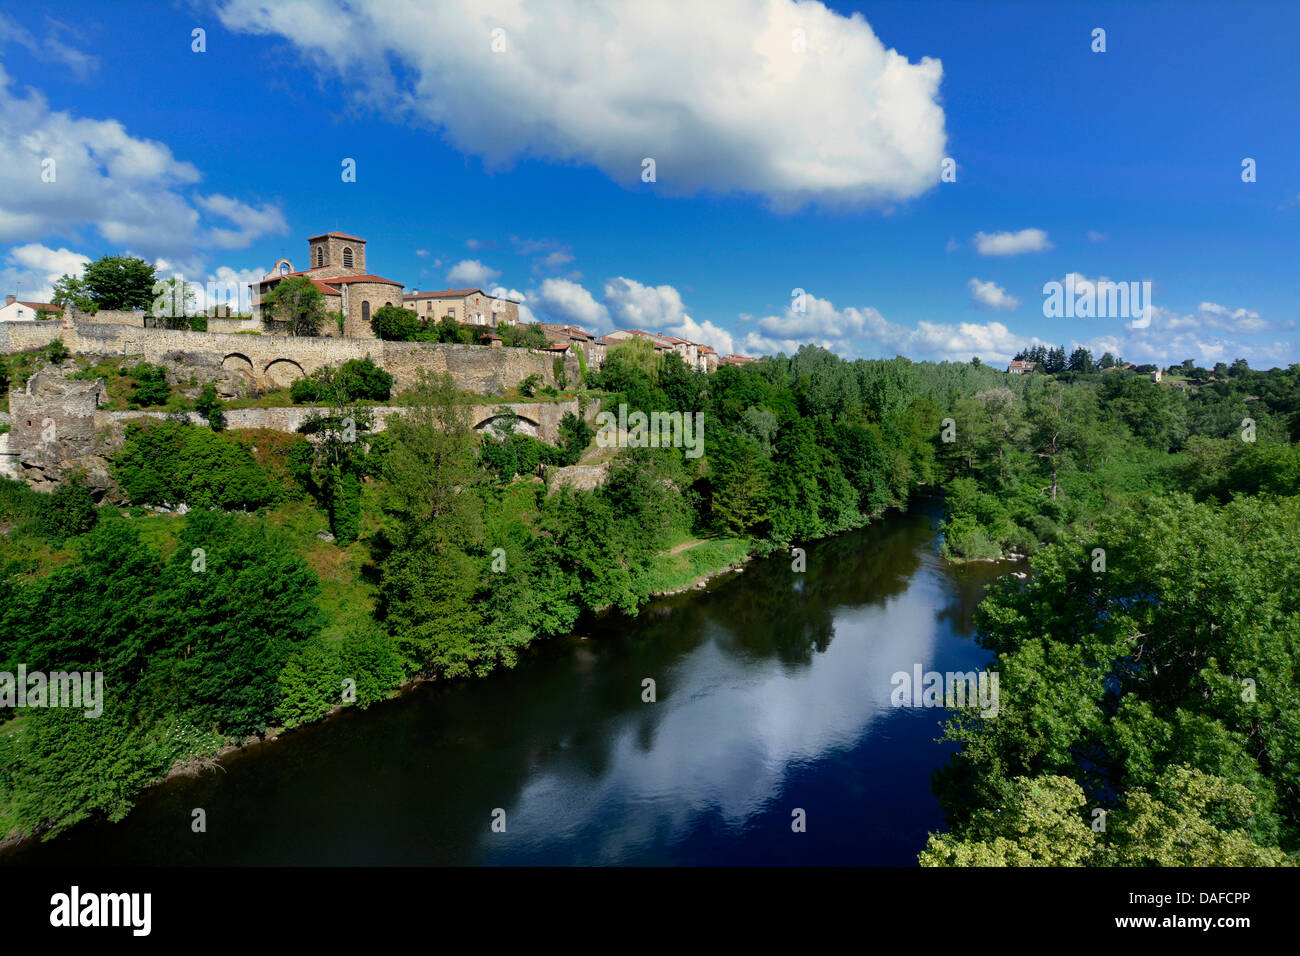 Villaggio di Vieille-Brioude sul fiume Allier in Haute Loire, Auvergne Francia centrale, Europa Foto Stock